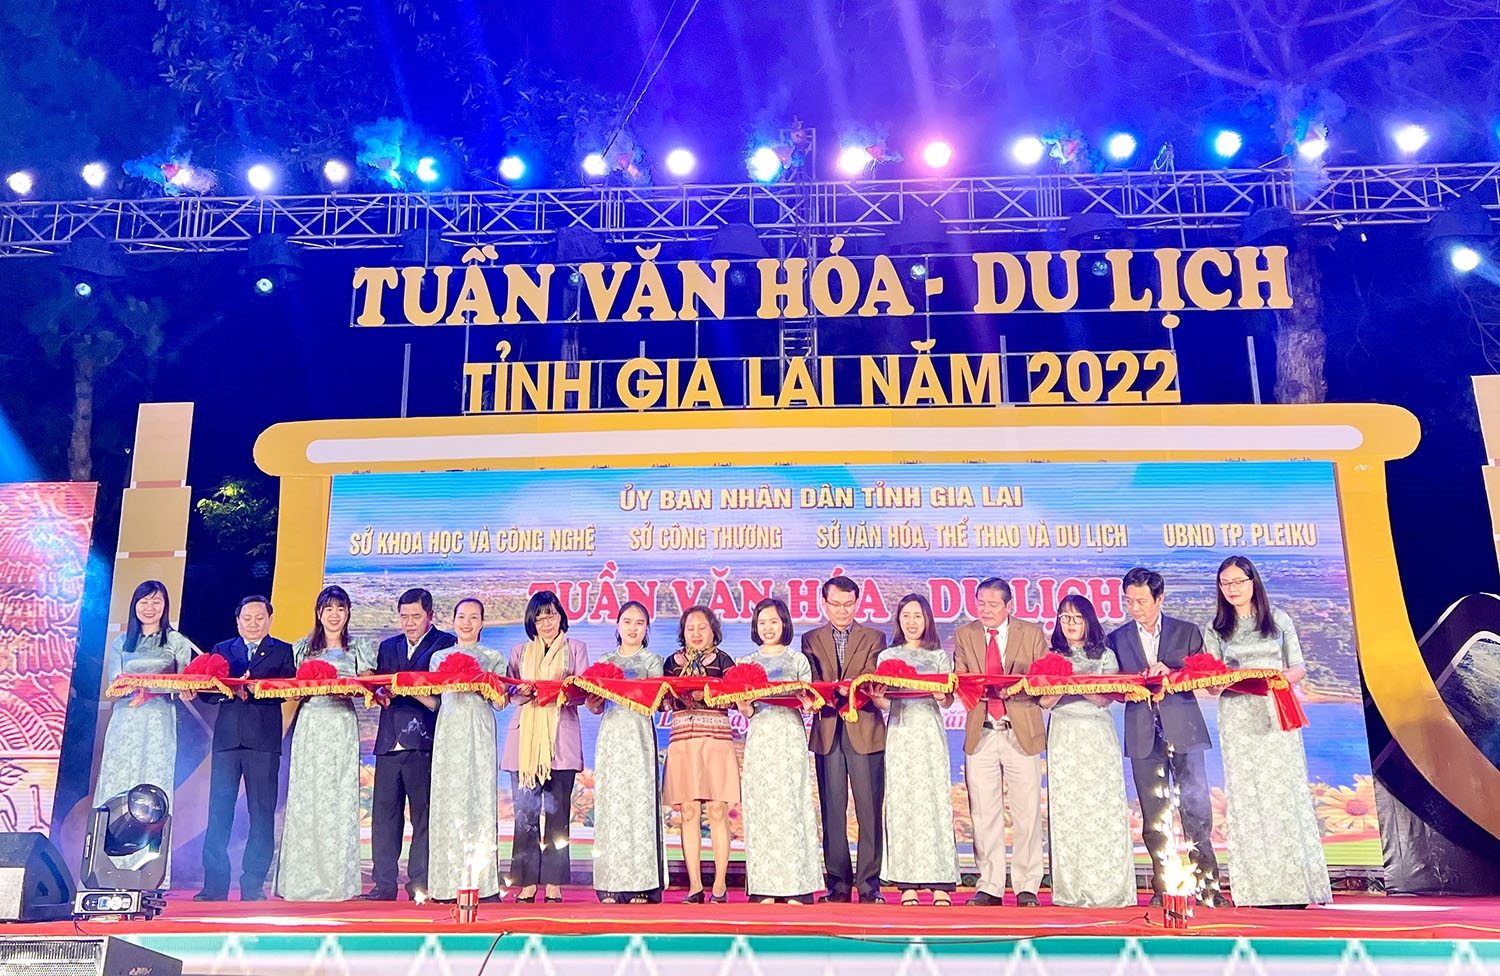 Các đại biểu cắt băng khai mạc Tuần Văn hóa - Du lịch tỉnh Gia Lai năm 2022